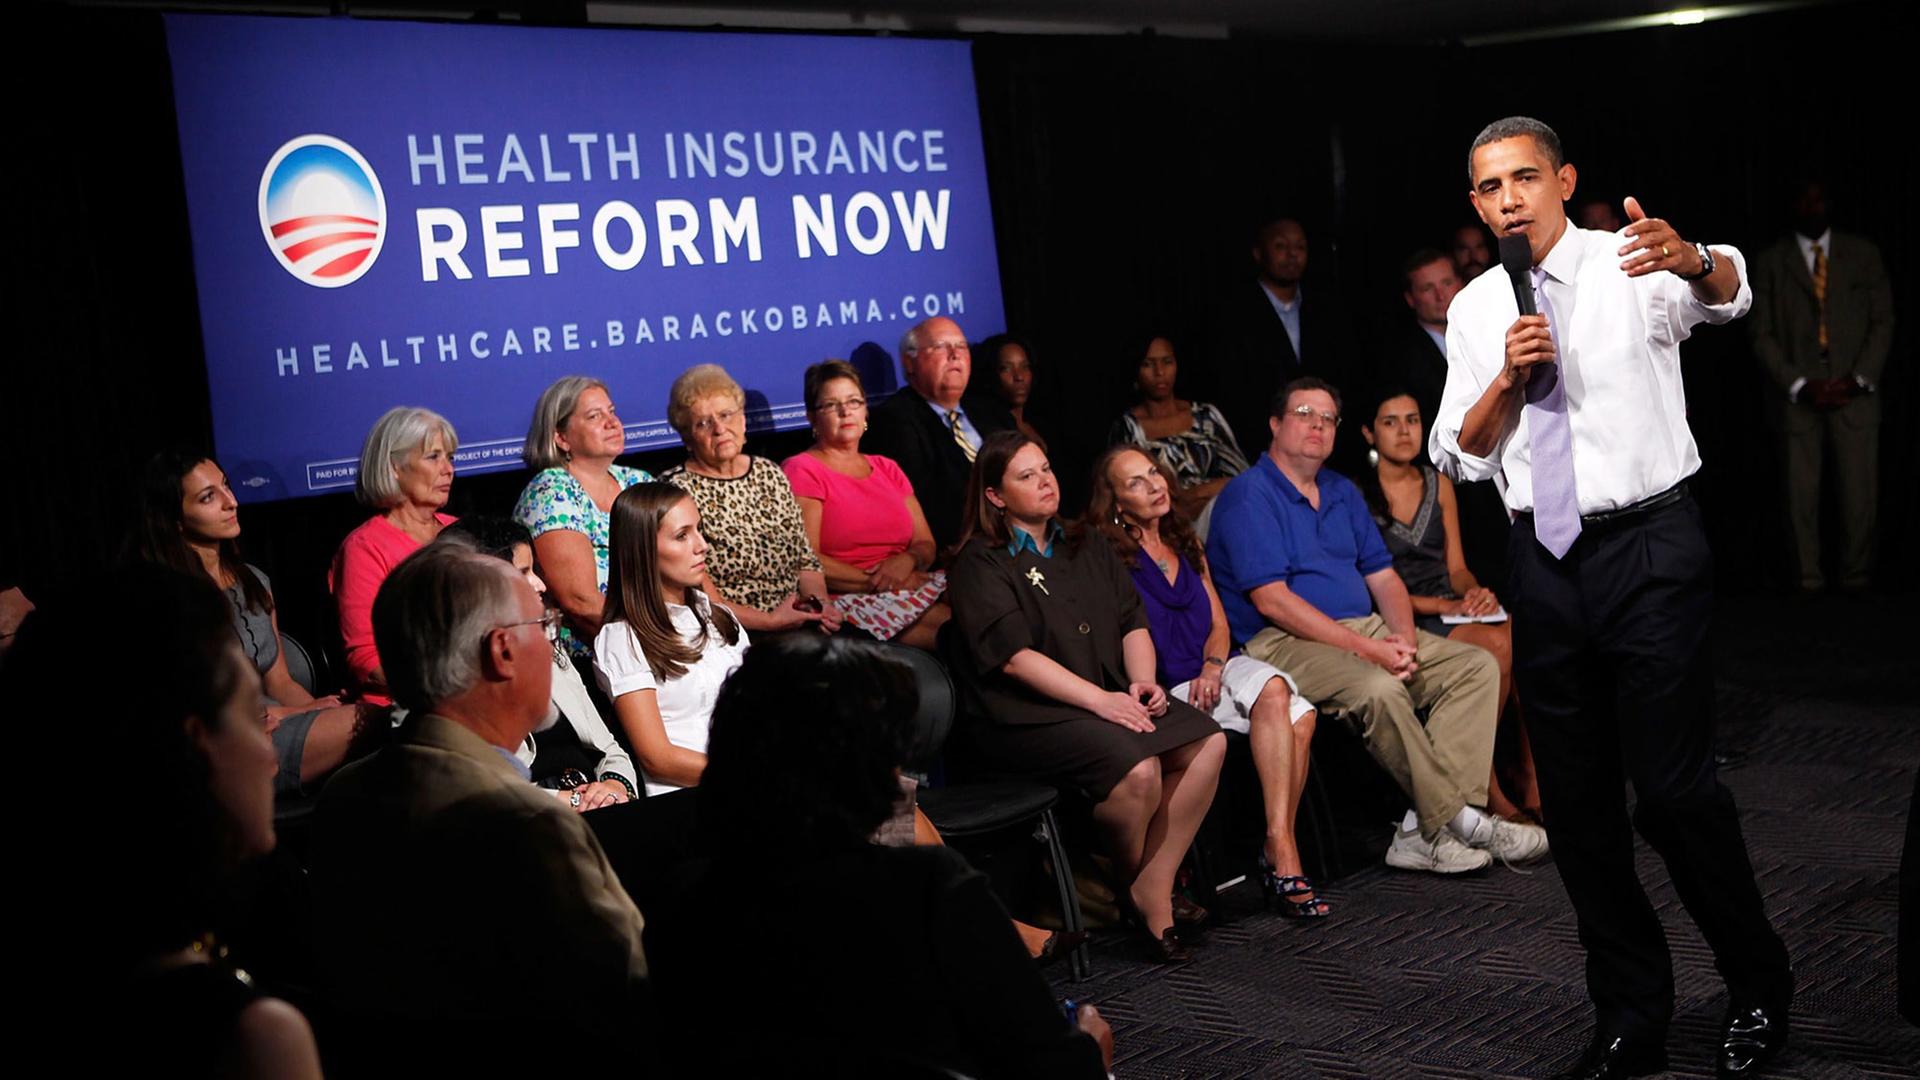 Gesundheitsreform in den USA - Ist "Obamacare" eine Errungenschaft